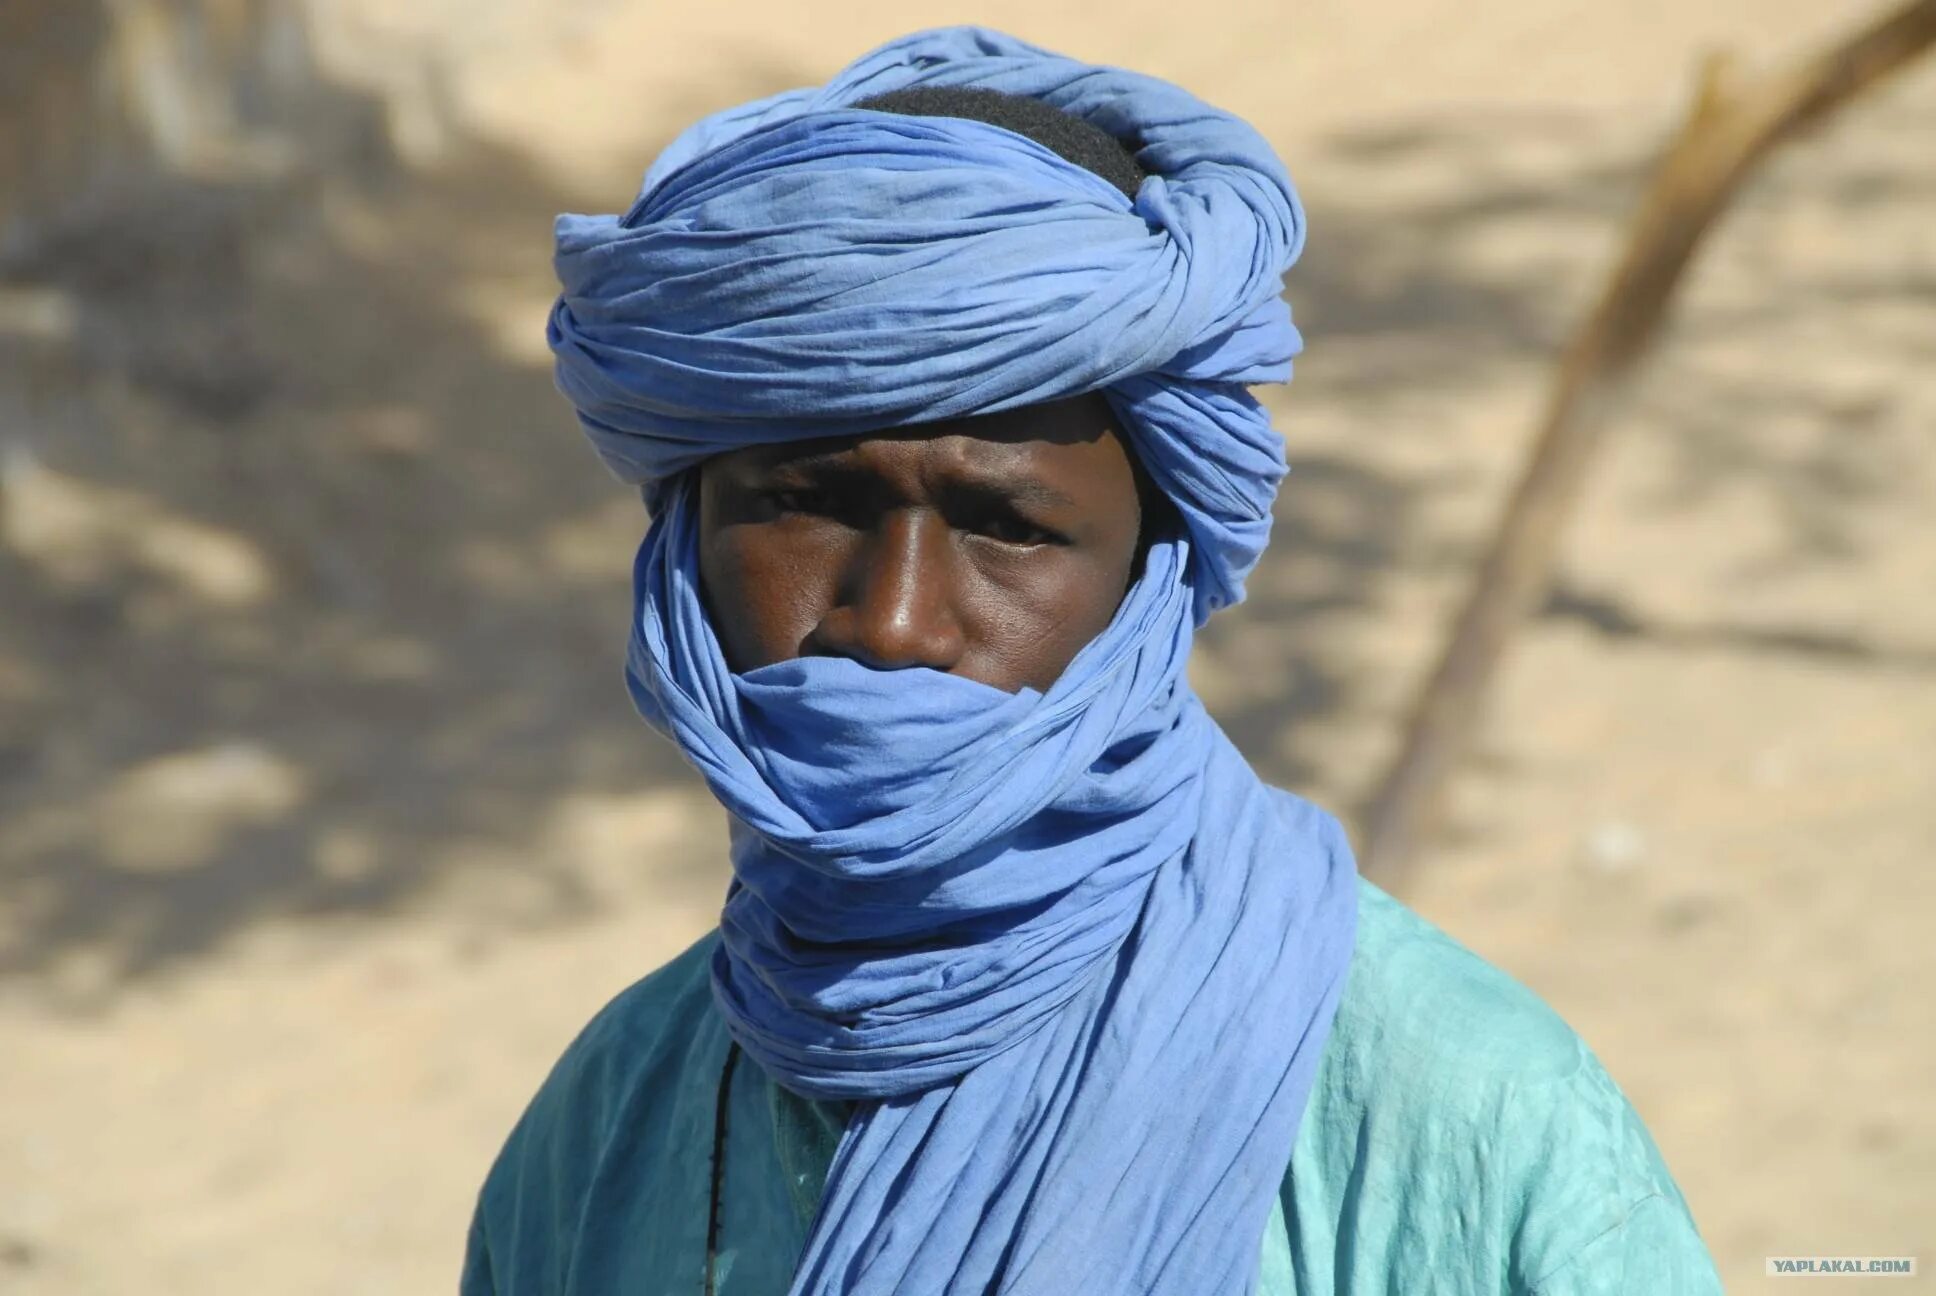 Араб северной африки. Берберы туареги бедуины. Туареги Ахаггара. Арабы берберы туареги раса. Туареги народ Африки.